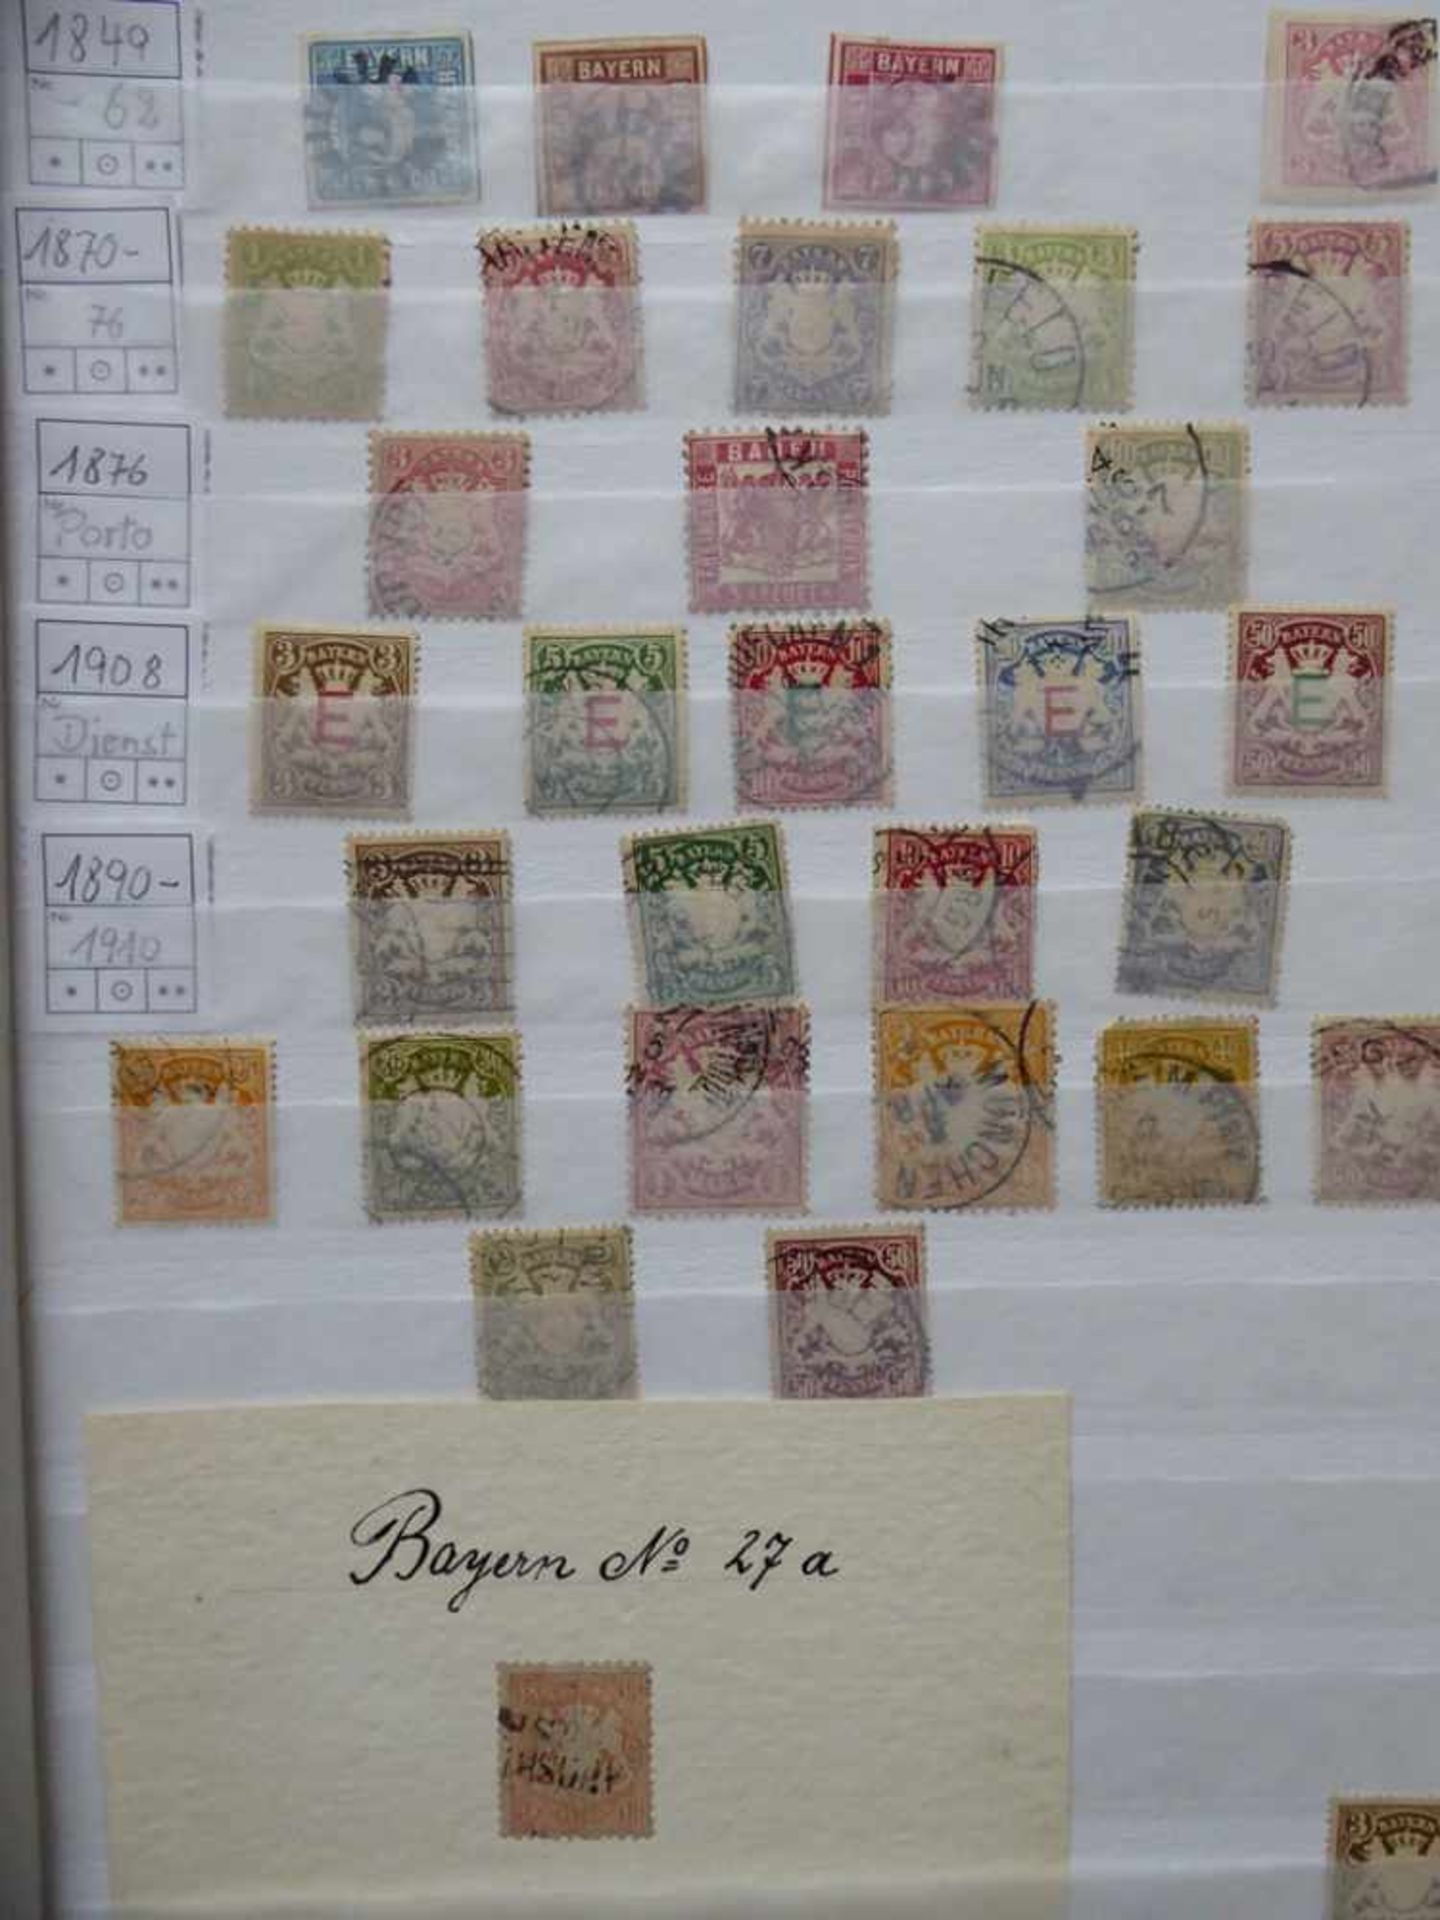 Briefmarken - umfangreiche Sammlung Altdeutsche Staaten und Deutsches Reich u.a., insg. 12 Alben ( - Image 4 of 4